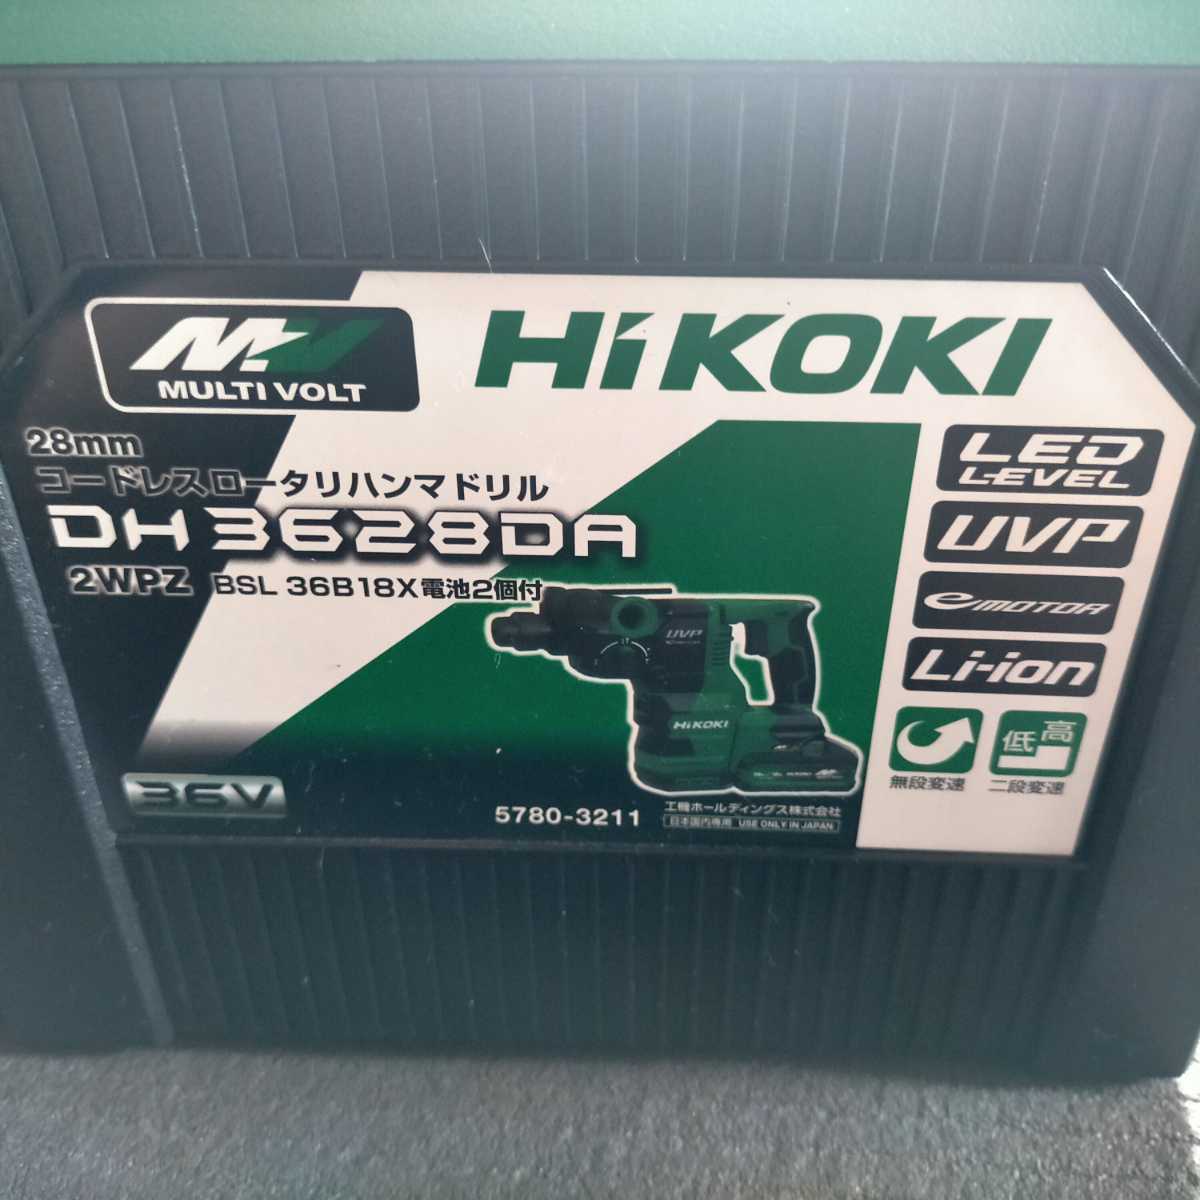 【新品 未使用品】ハイコーキ(HIKOKI)コードレスハンマドリル DH3628DA(2WPZ)送料無料_画像5